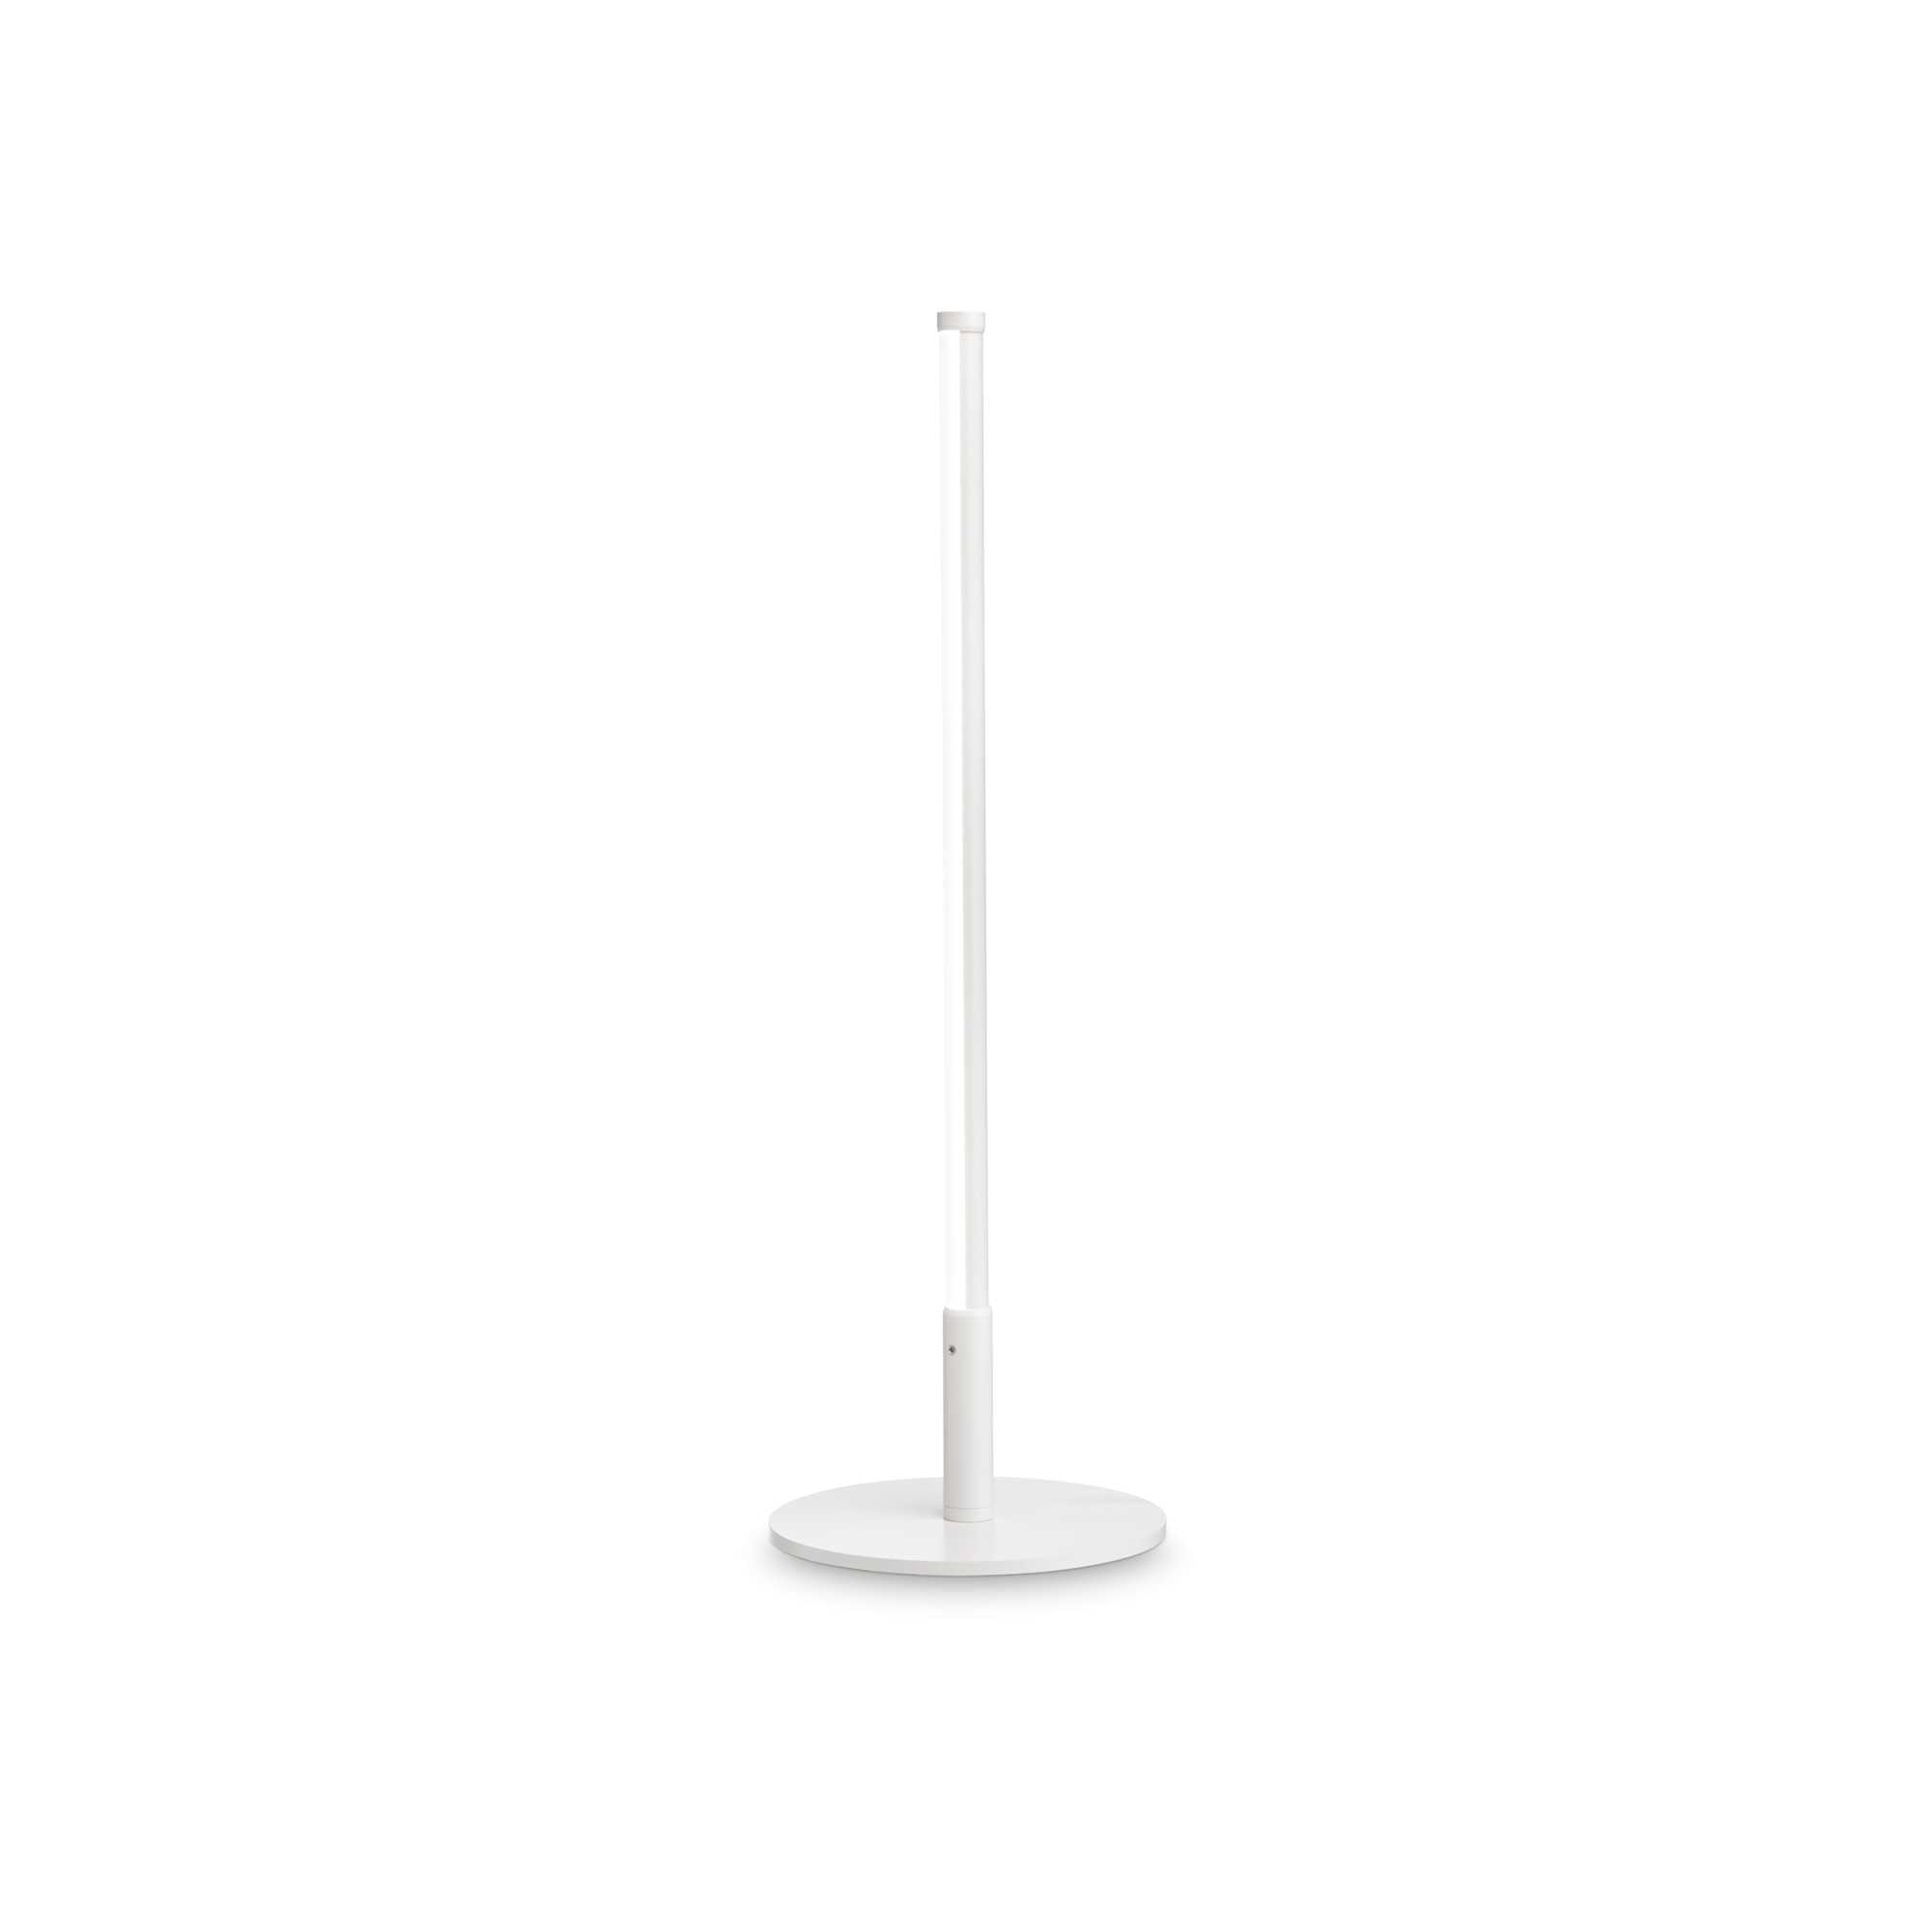 AD hotelska oprema Stolna lampa Yoko tl- Bijele boje slika proizvoda